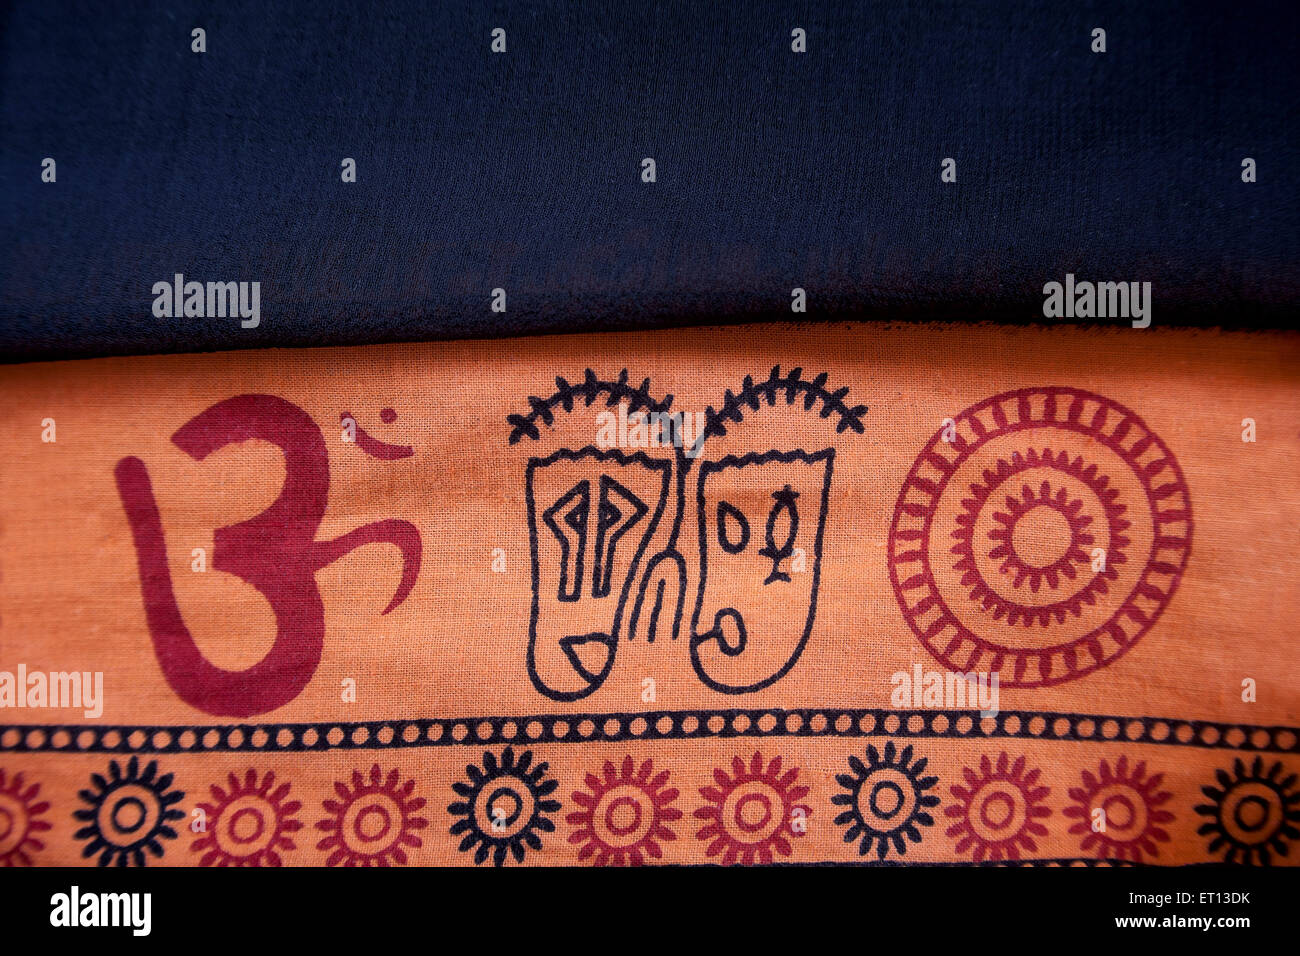 L'hindouisme Aum ou om symbole signe sur les vêtements de coton Inde Asie jan 2011 Banque D'Images